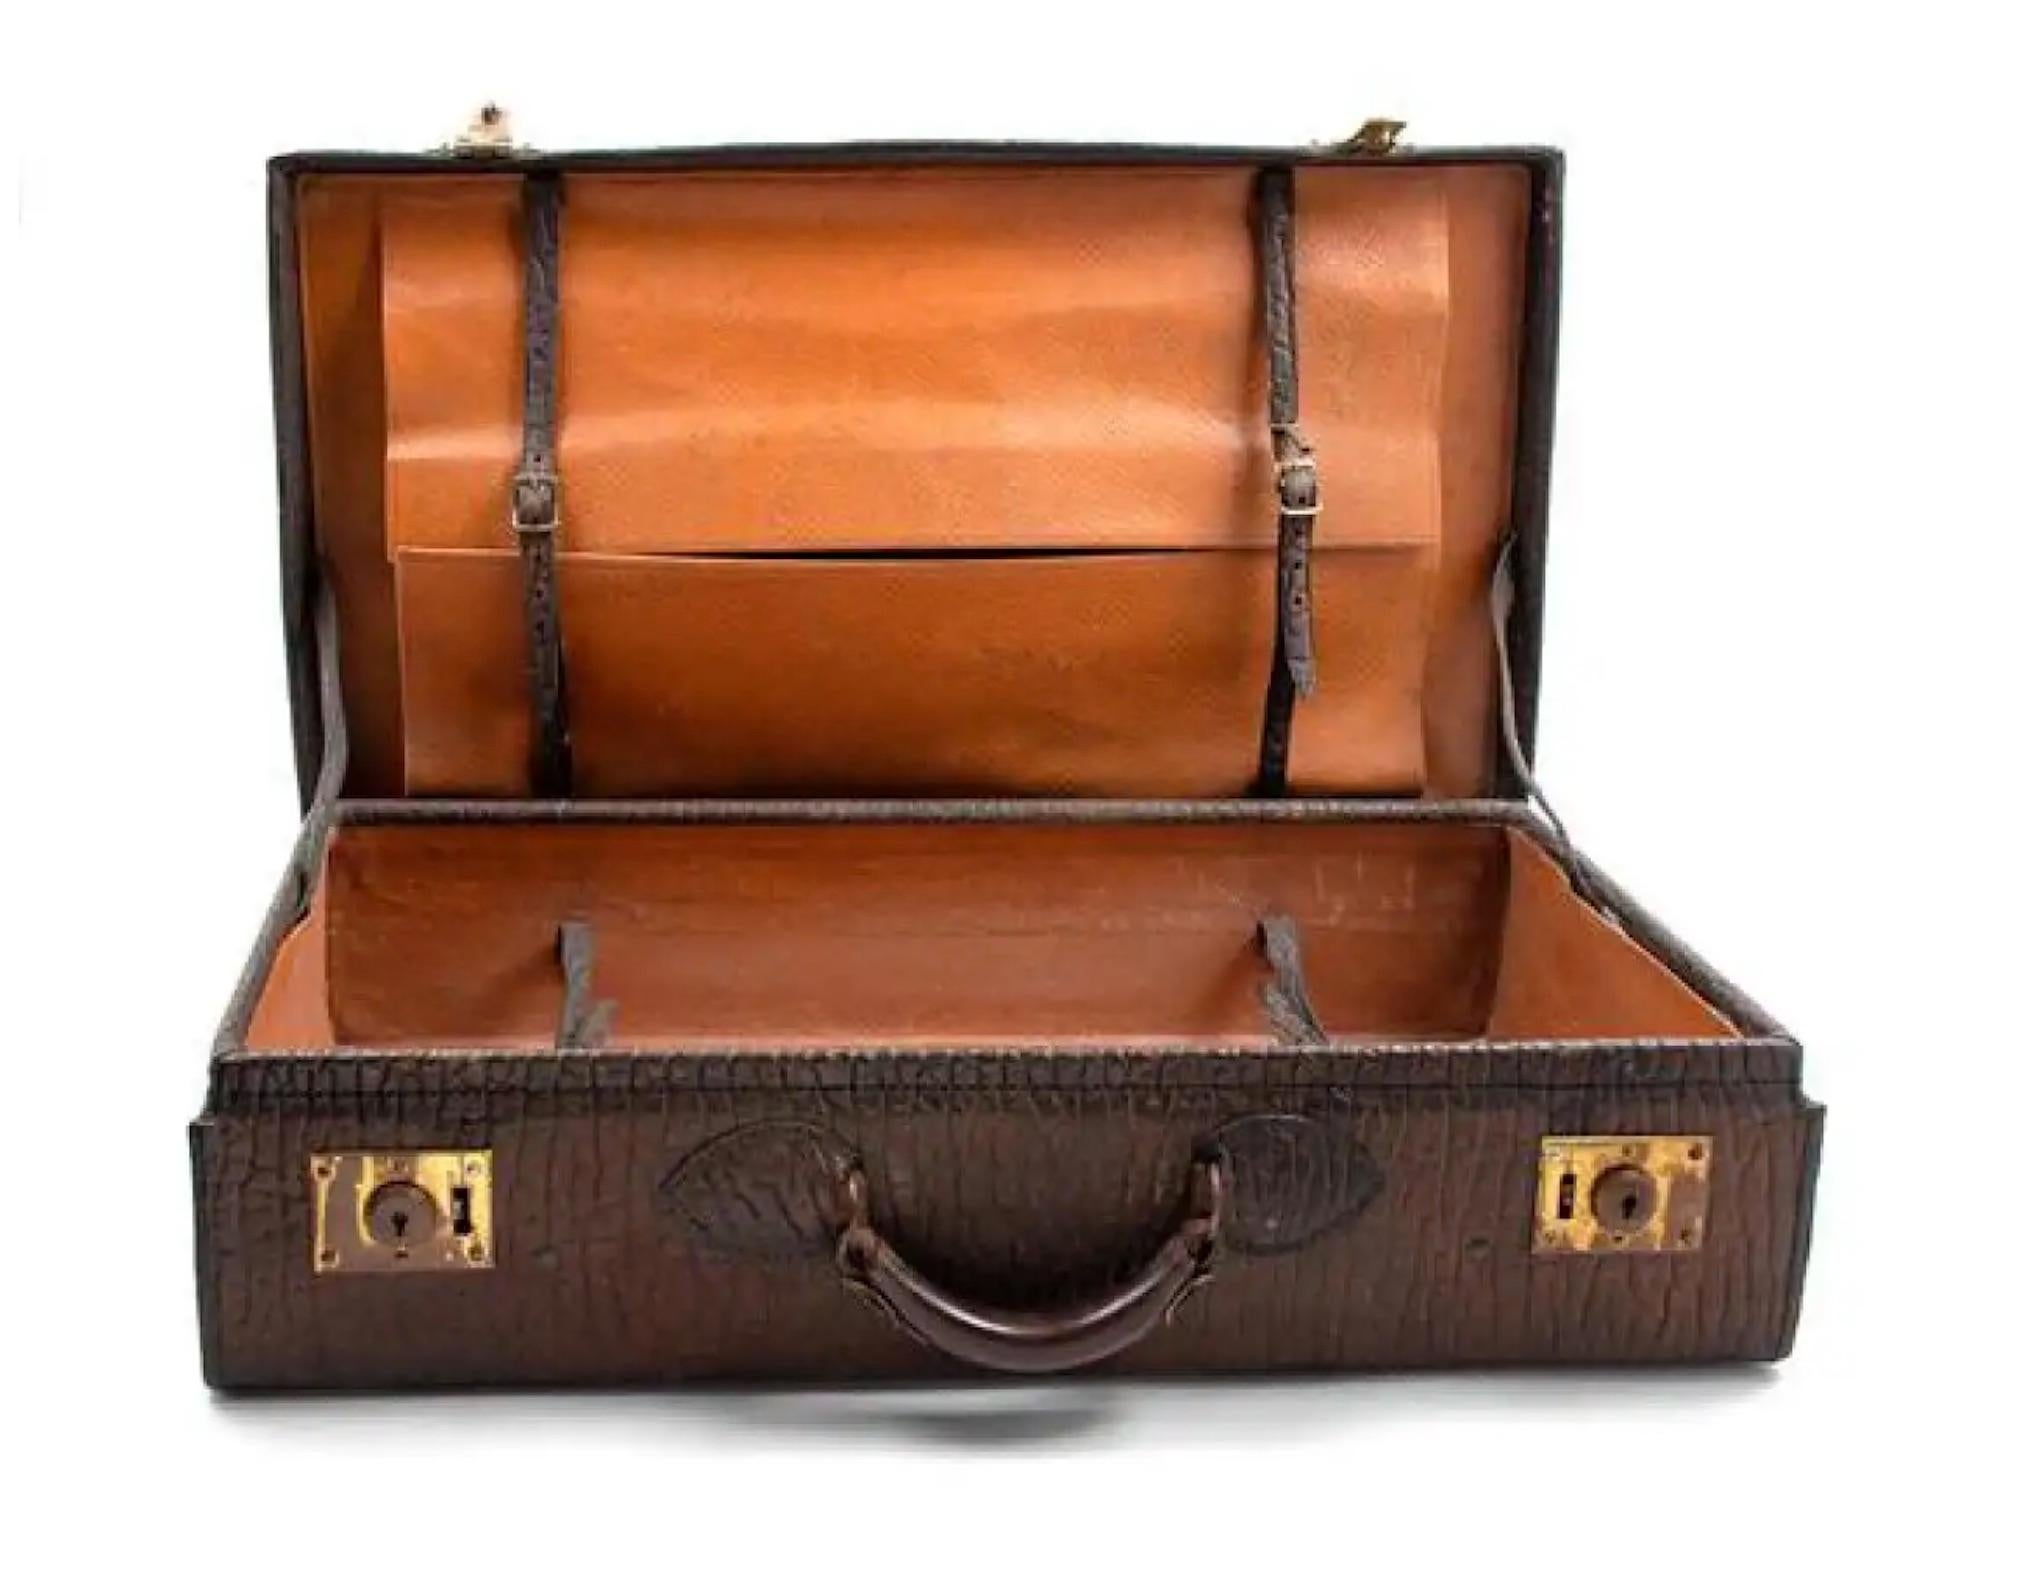 Hübscher Koffer aus dem 19. Jahrhundert mit geprägtem Leder. Hervorragend geeignet für eine Collection, die als Beistelltisch oder Couchtisch verwendet wird.